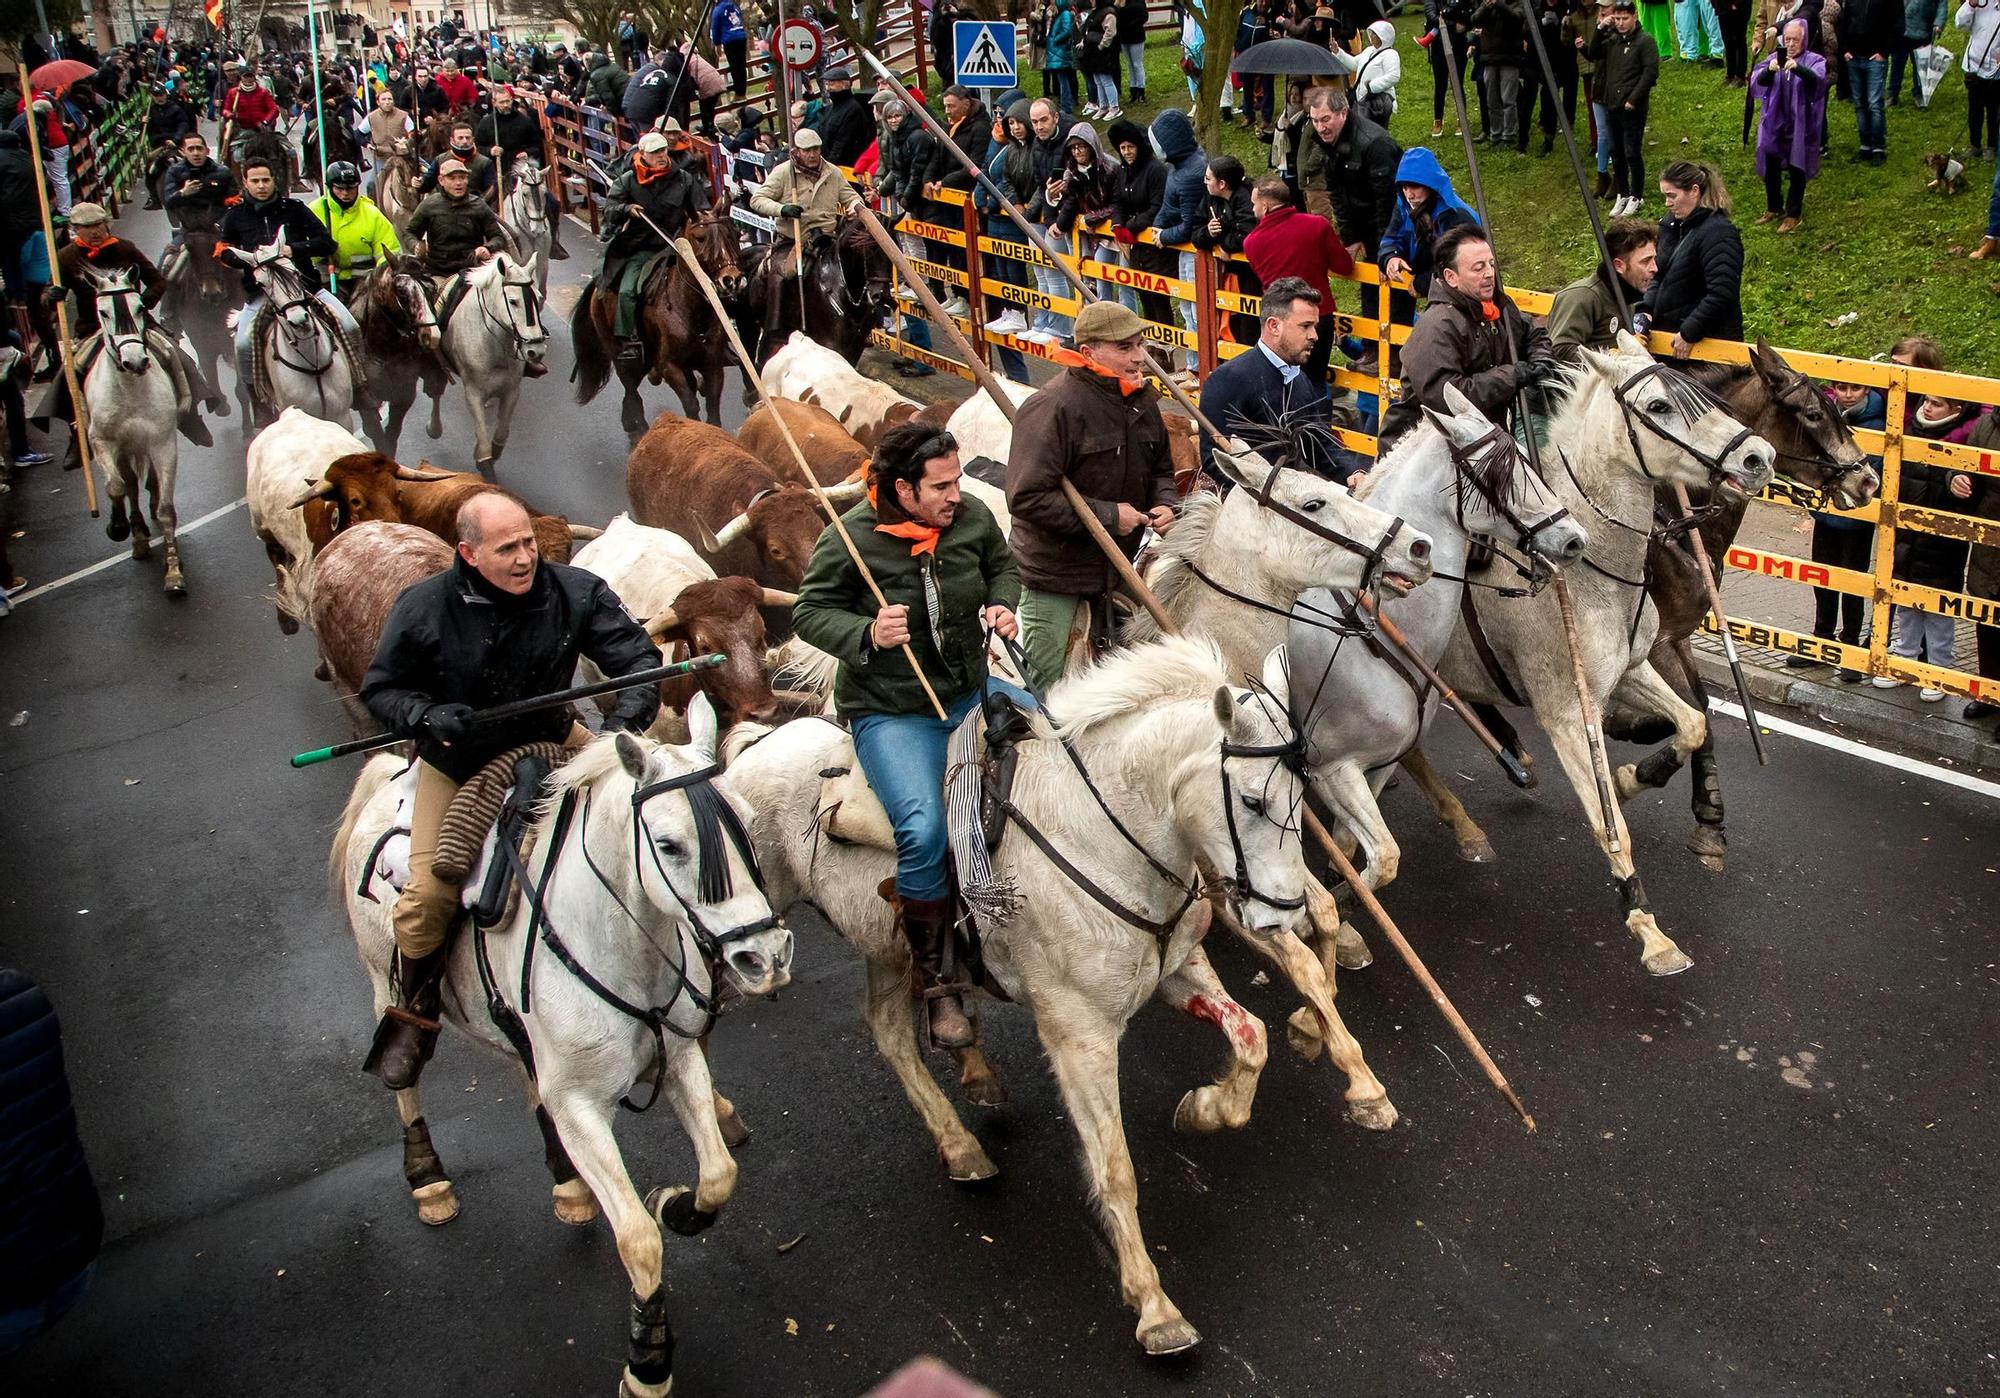 GALERÍA: El encierro a caballo del Carnaval del Toro, en imágenes